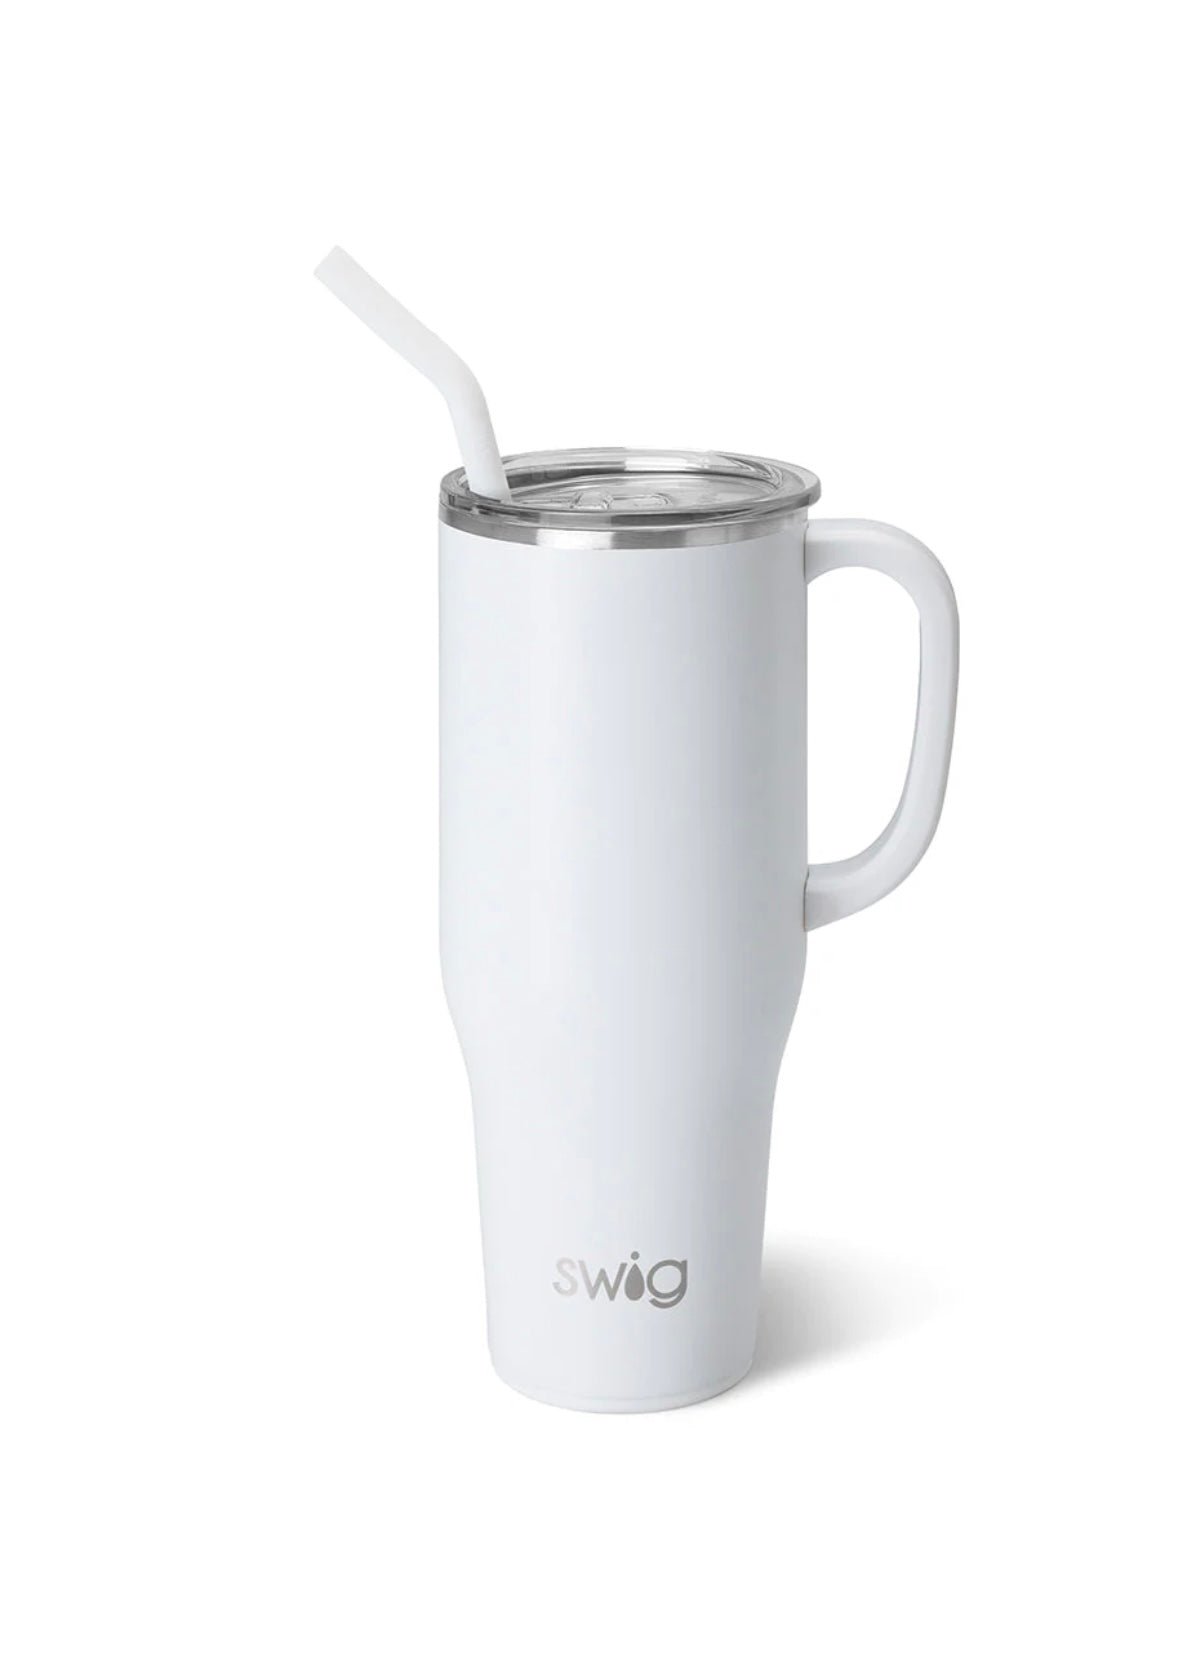 Swig Mega Mug 40 oz - White - Jimberly's Boutique